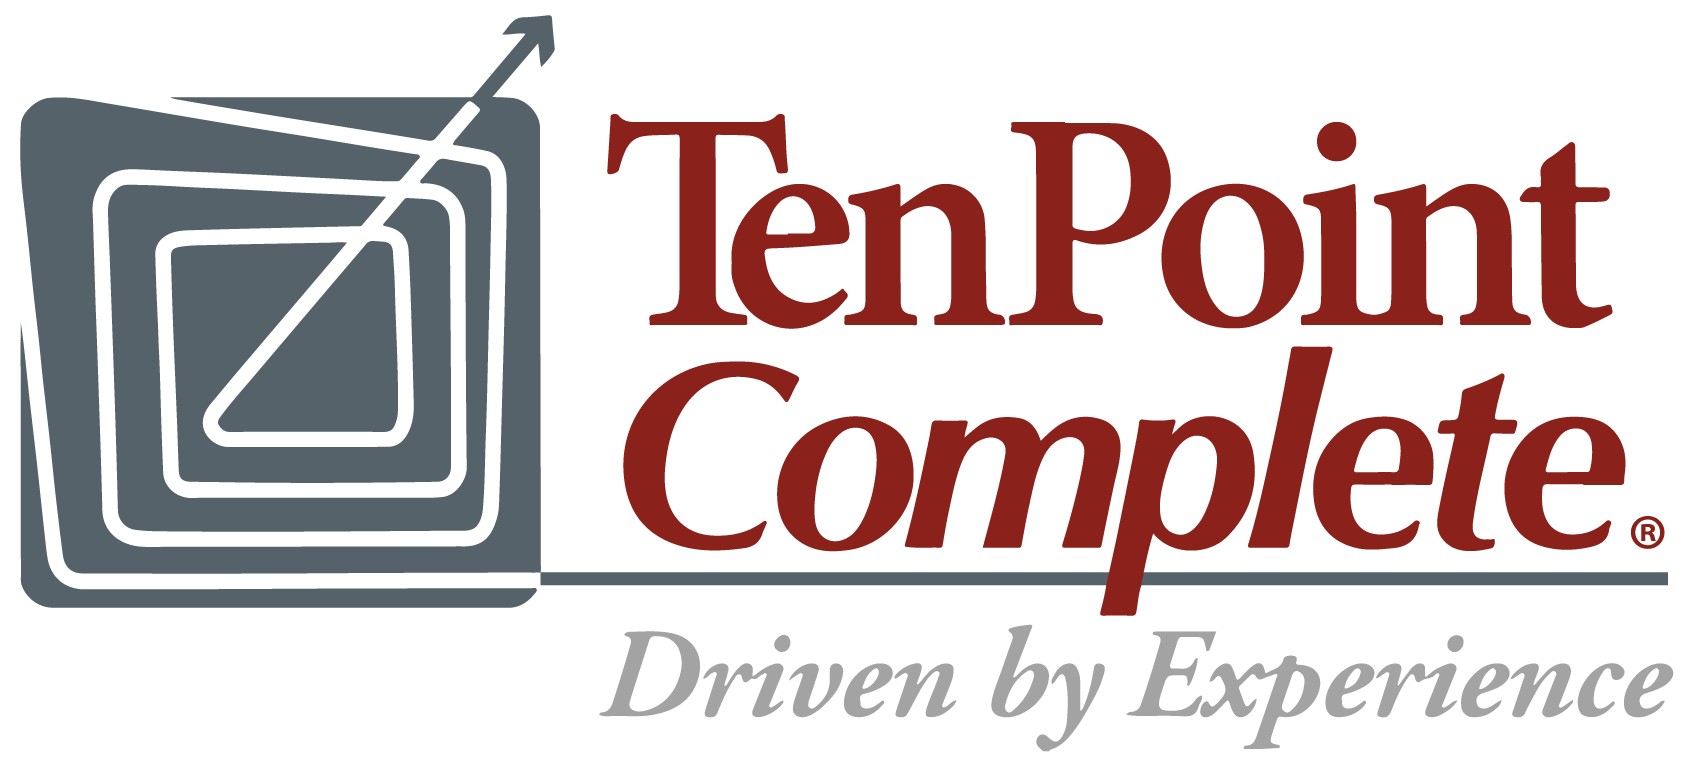 TenPoint Complete logo